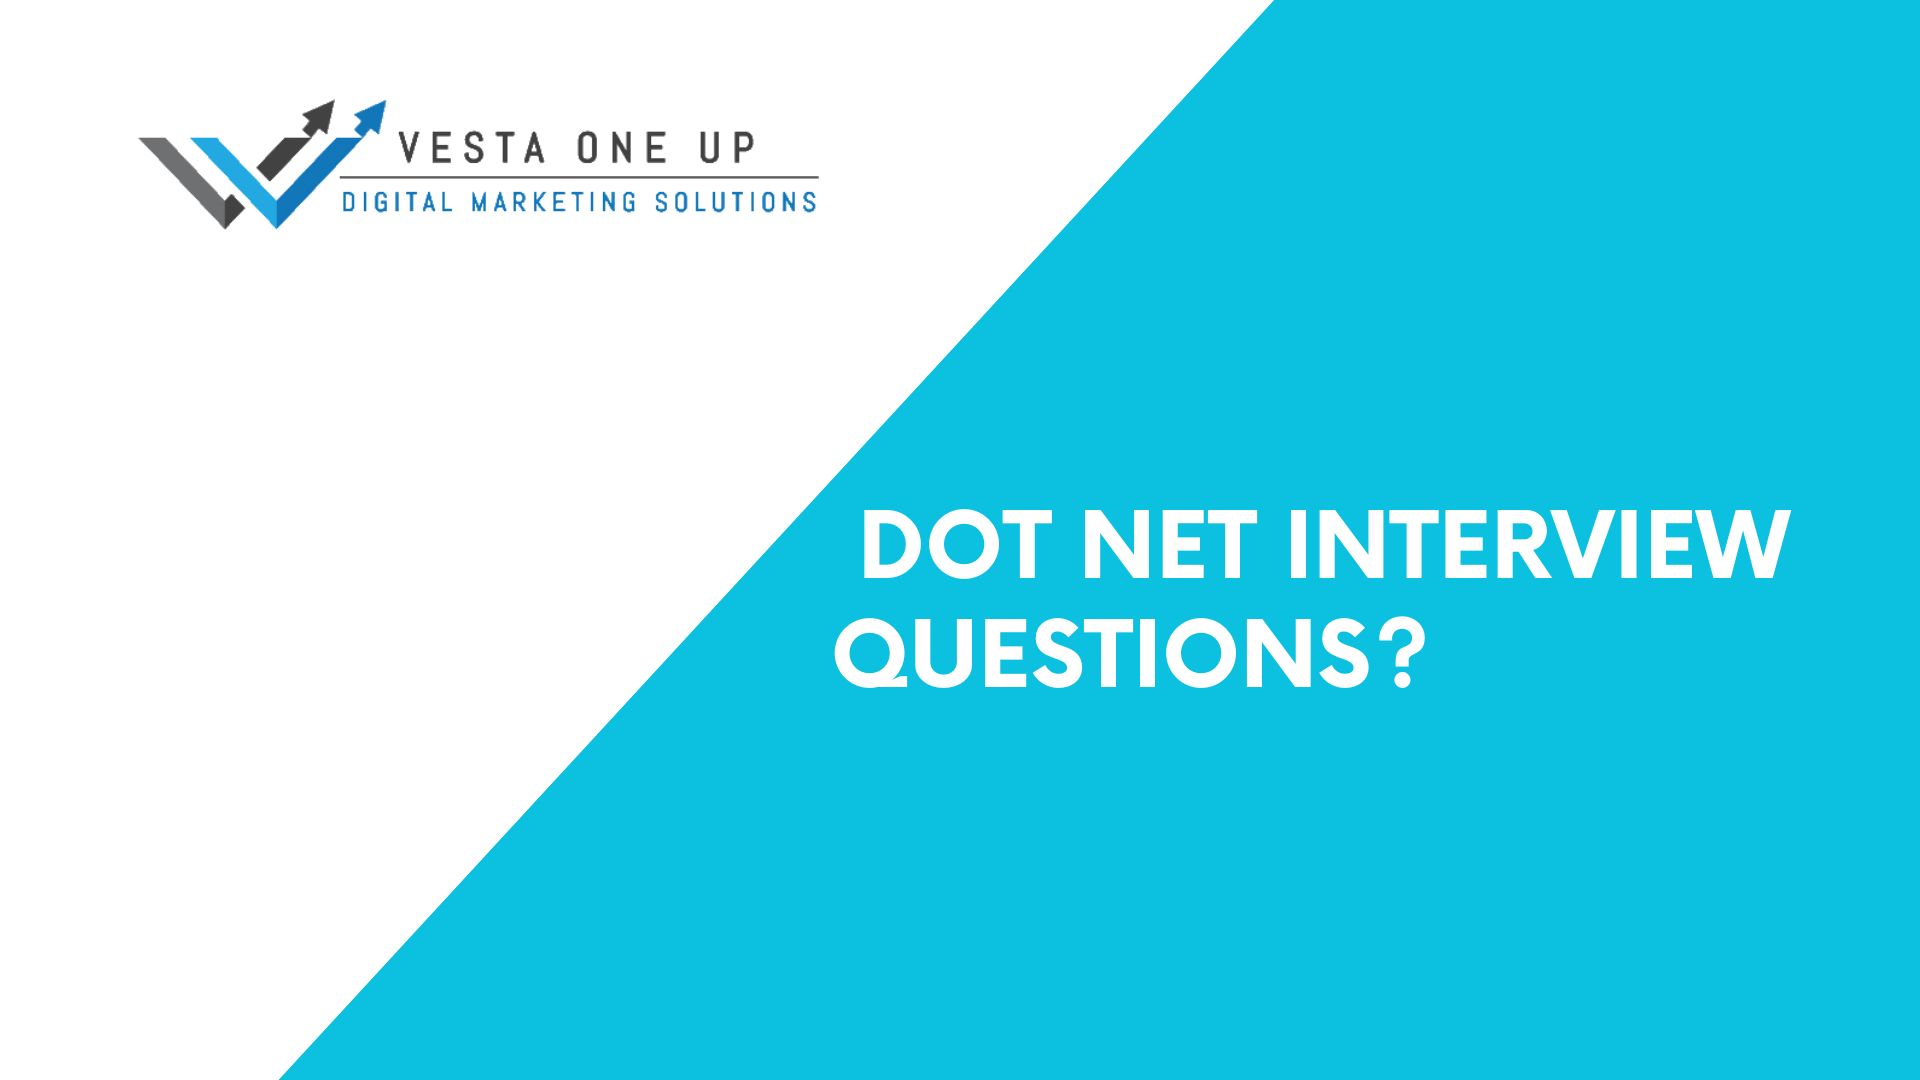 Dot net interview questions?